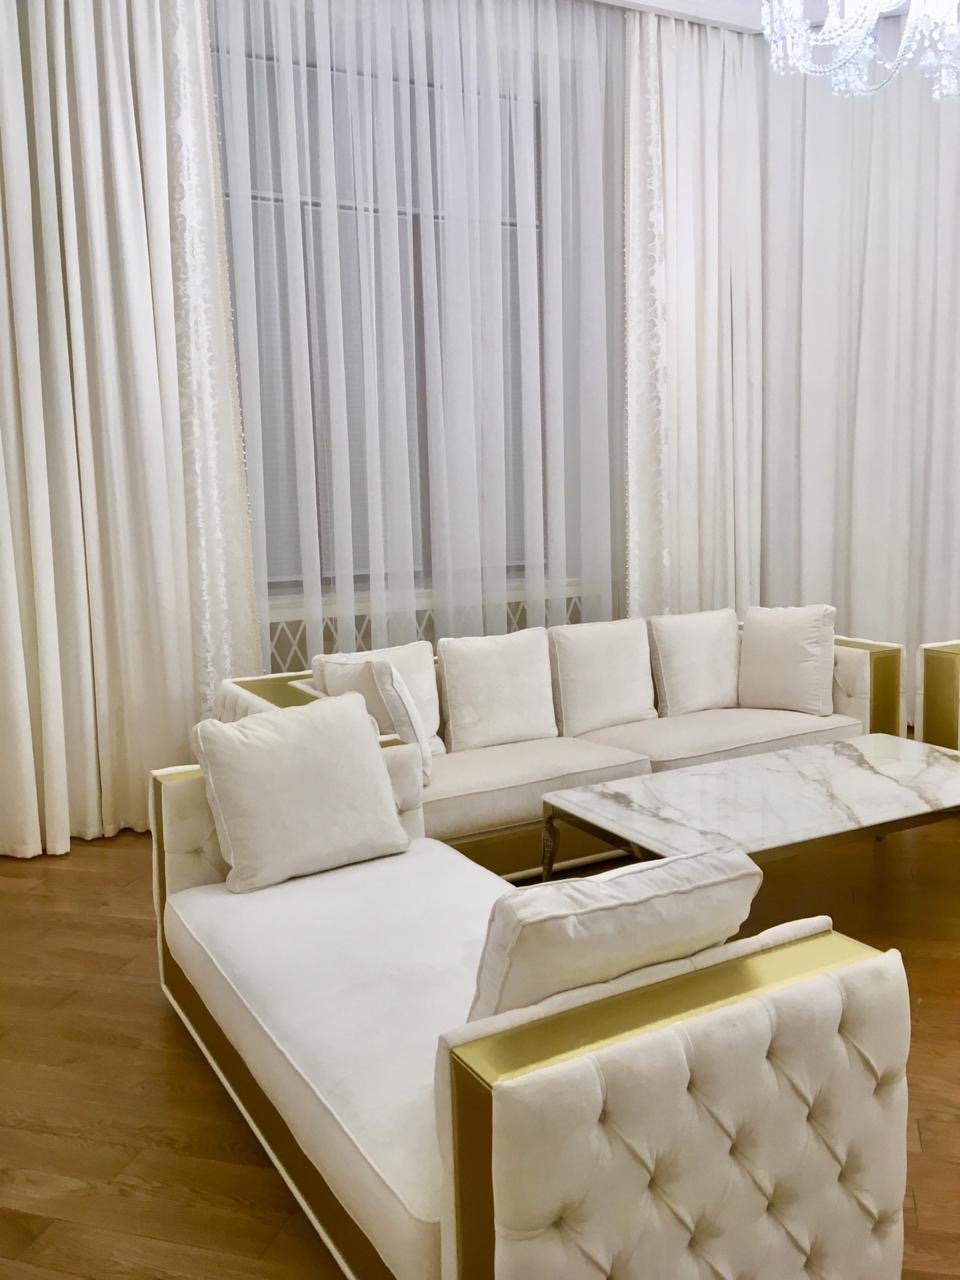 Белые шторы в интерьере маленькой гостиной фото